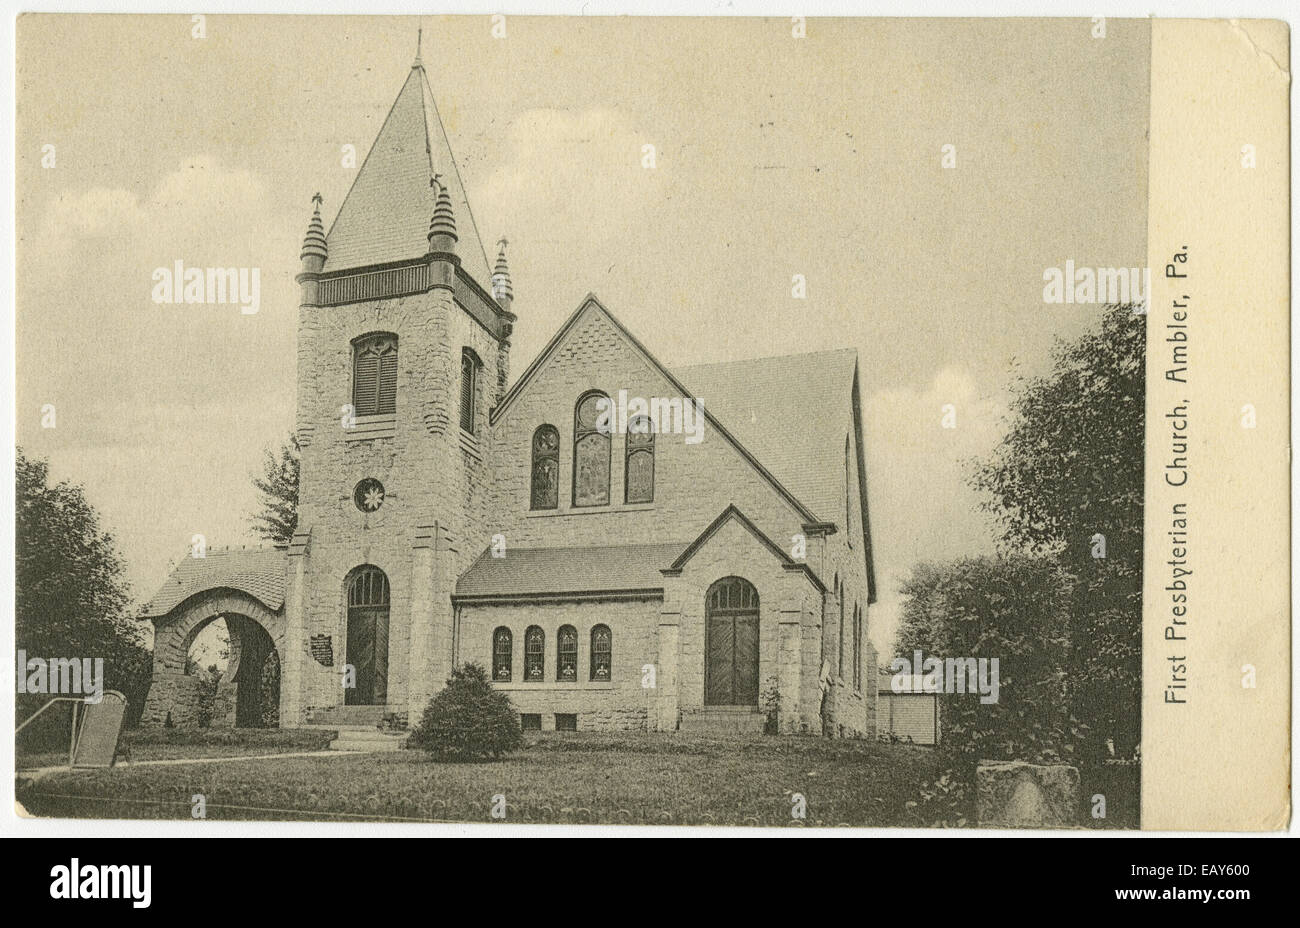 Ersten presbyterianischen Kirche in Ambler, Pennsylvania nach einer Pre-1923-Postkarte von RG-428, Postkarten-Kollektion Stockfoto